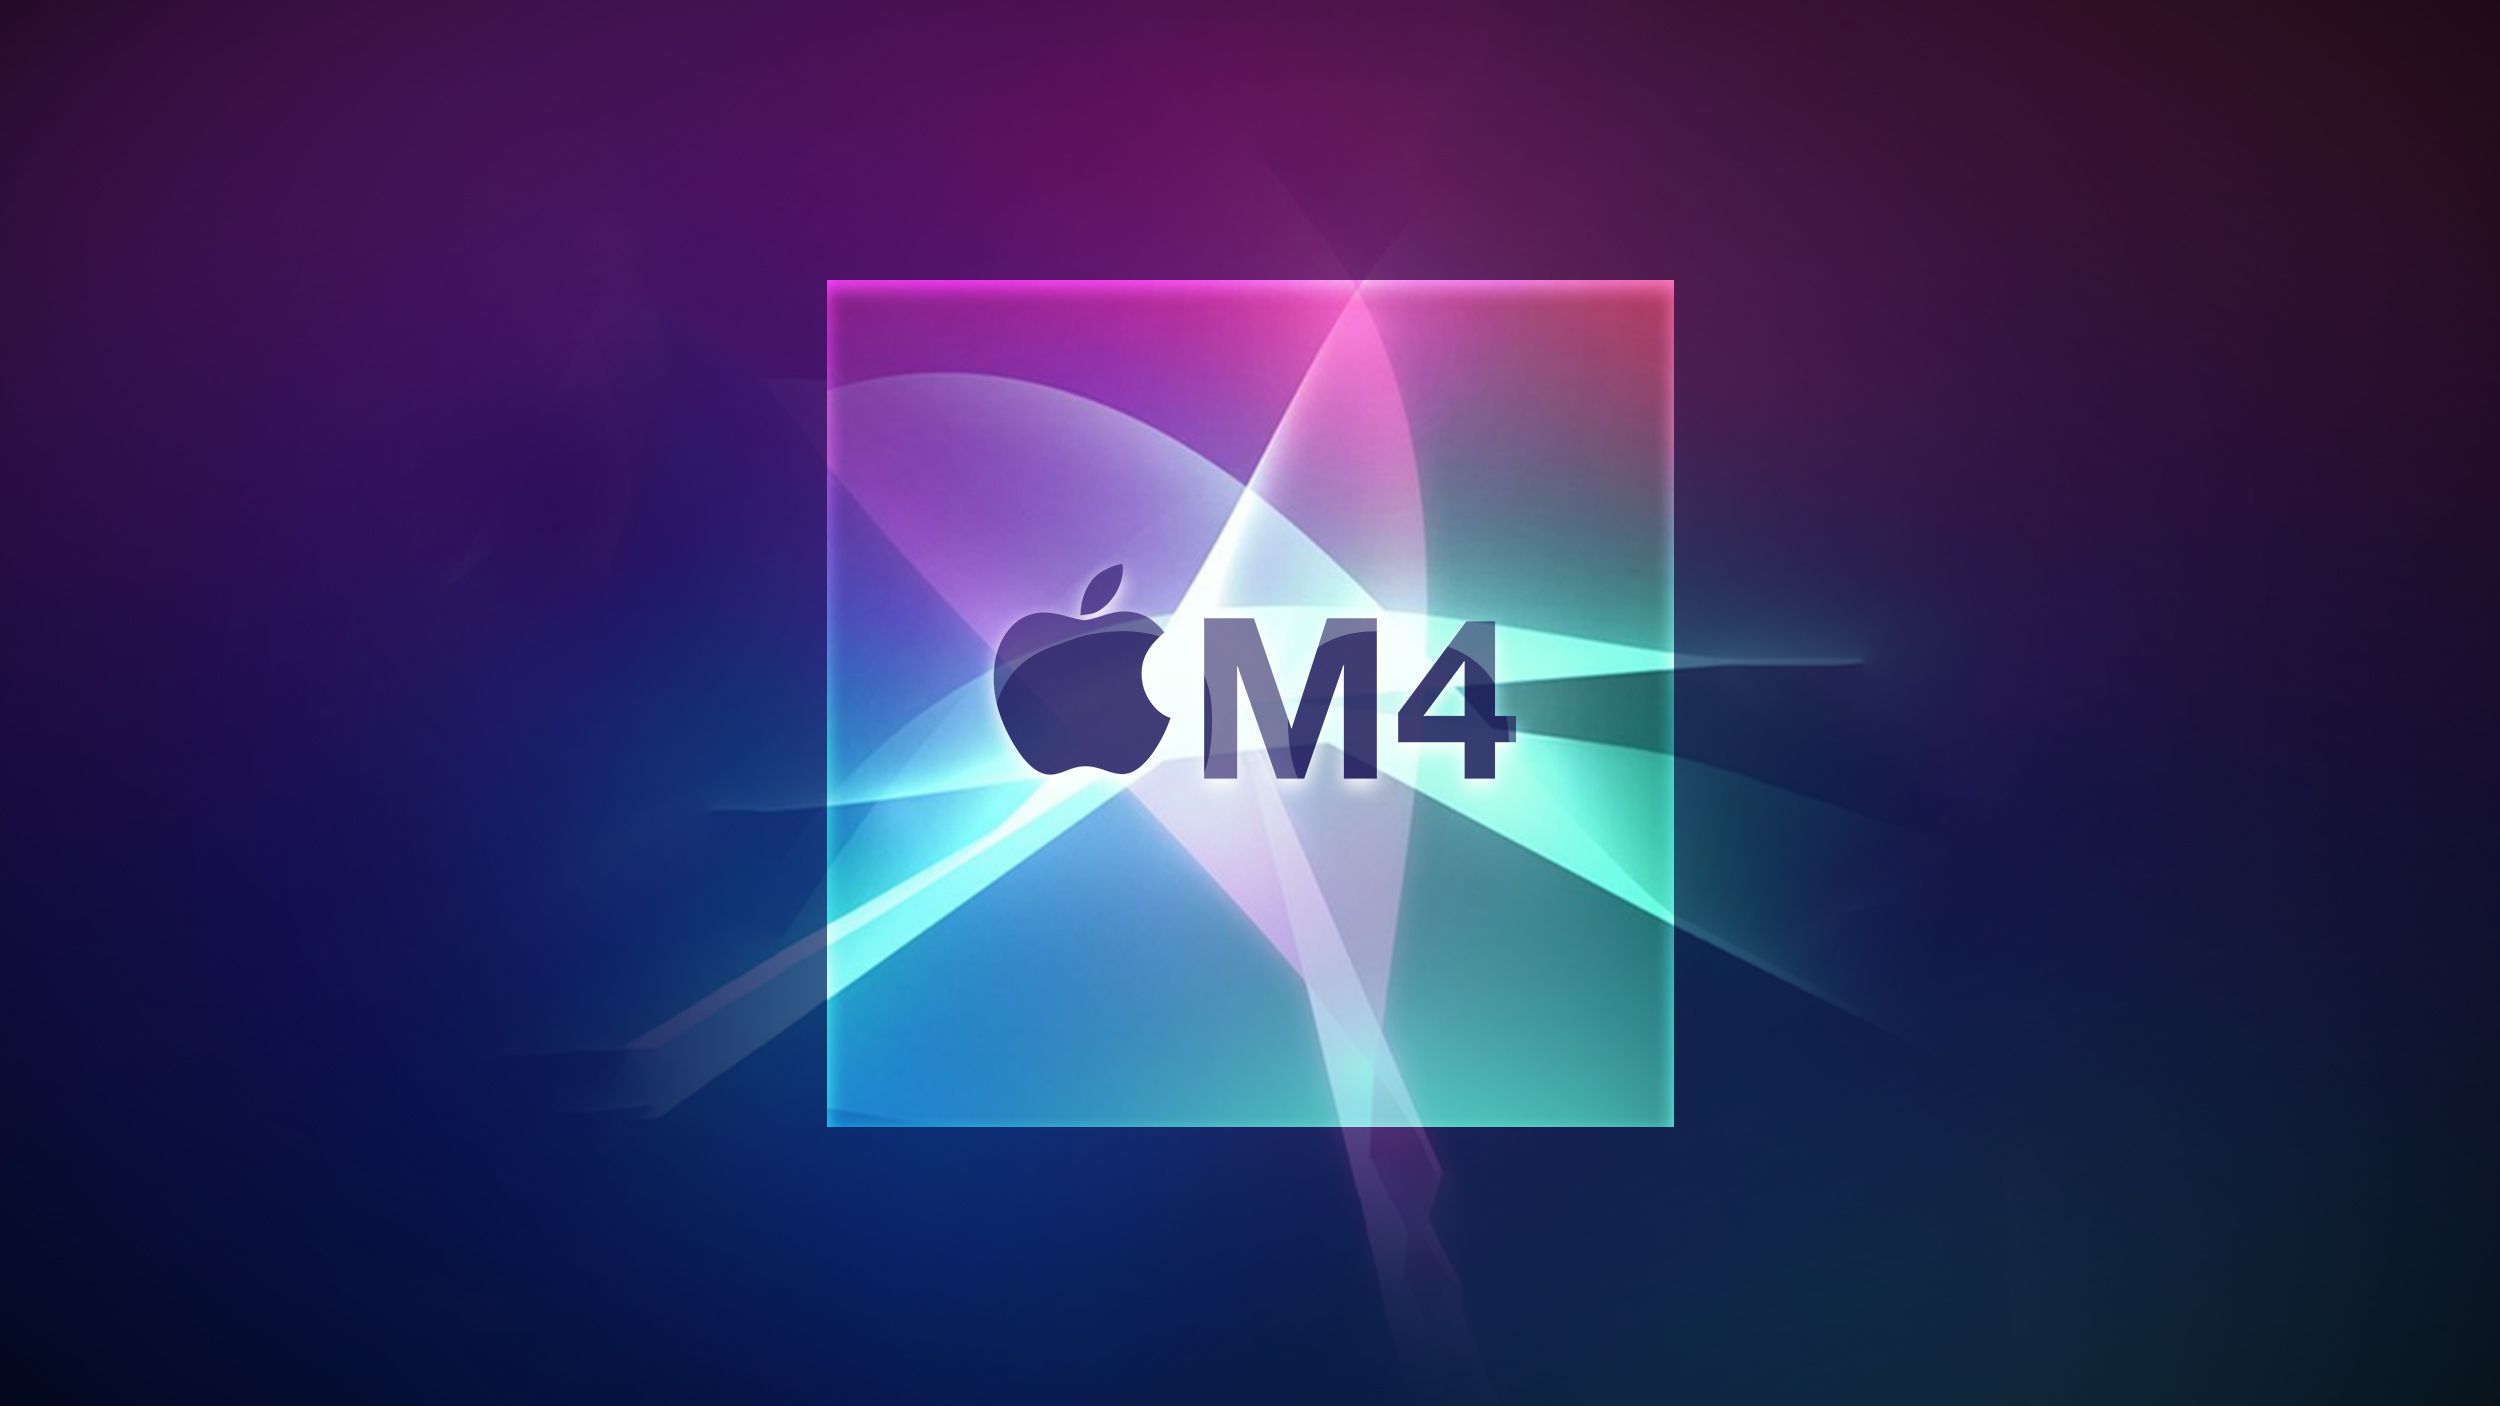 Apple M4 MacBook Pro 라인업: 기대할 사항